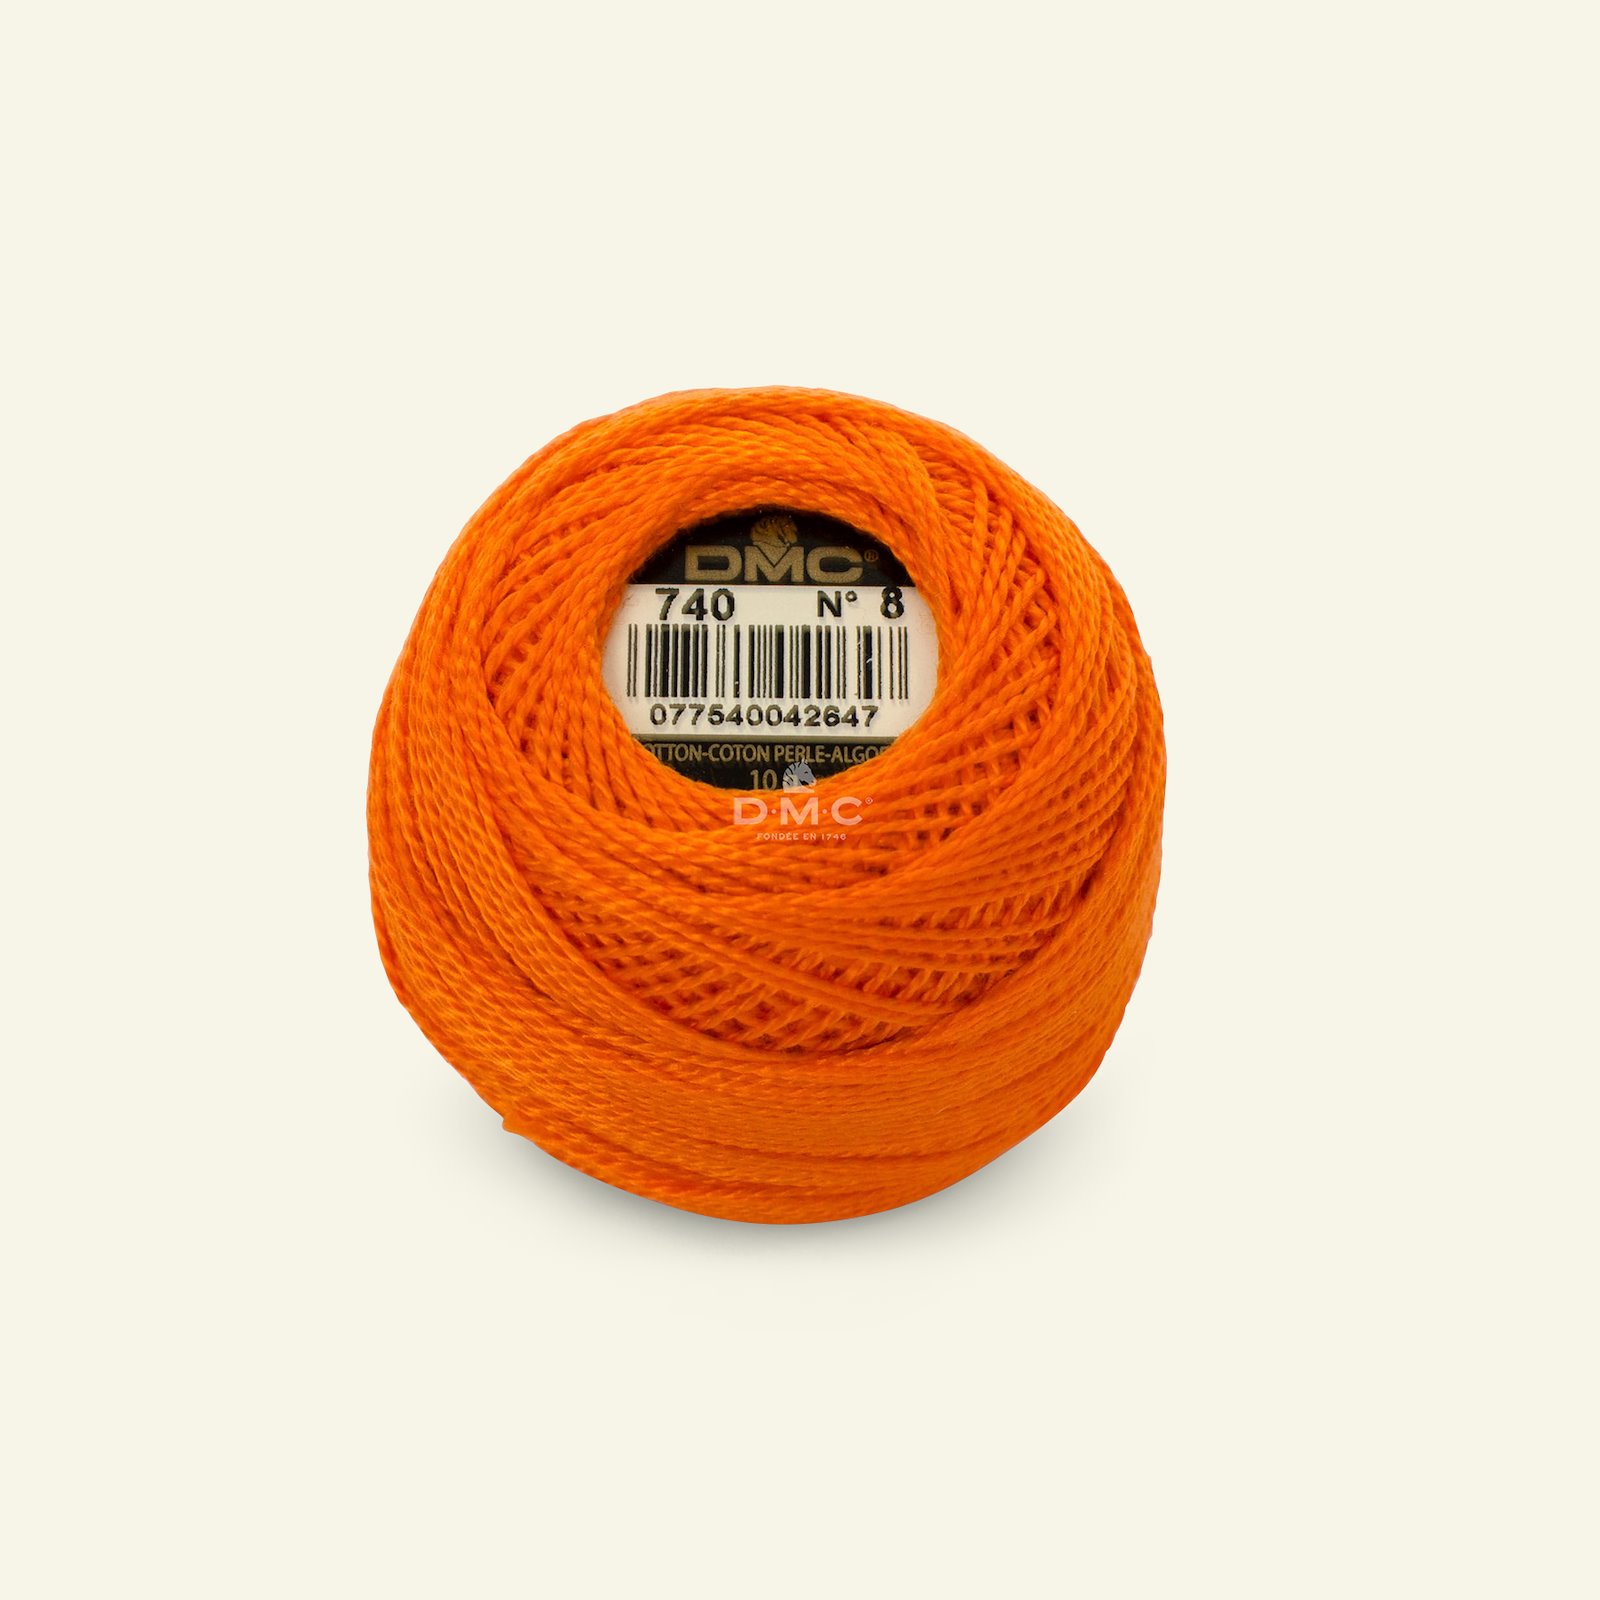 DMC perle garn nr. 8 oransje|Art. 116 farge 740 (Coton Perlé) 35115_pack